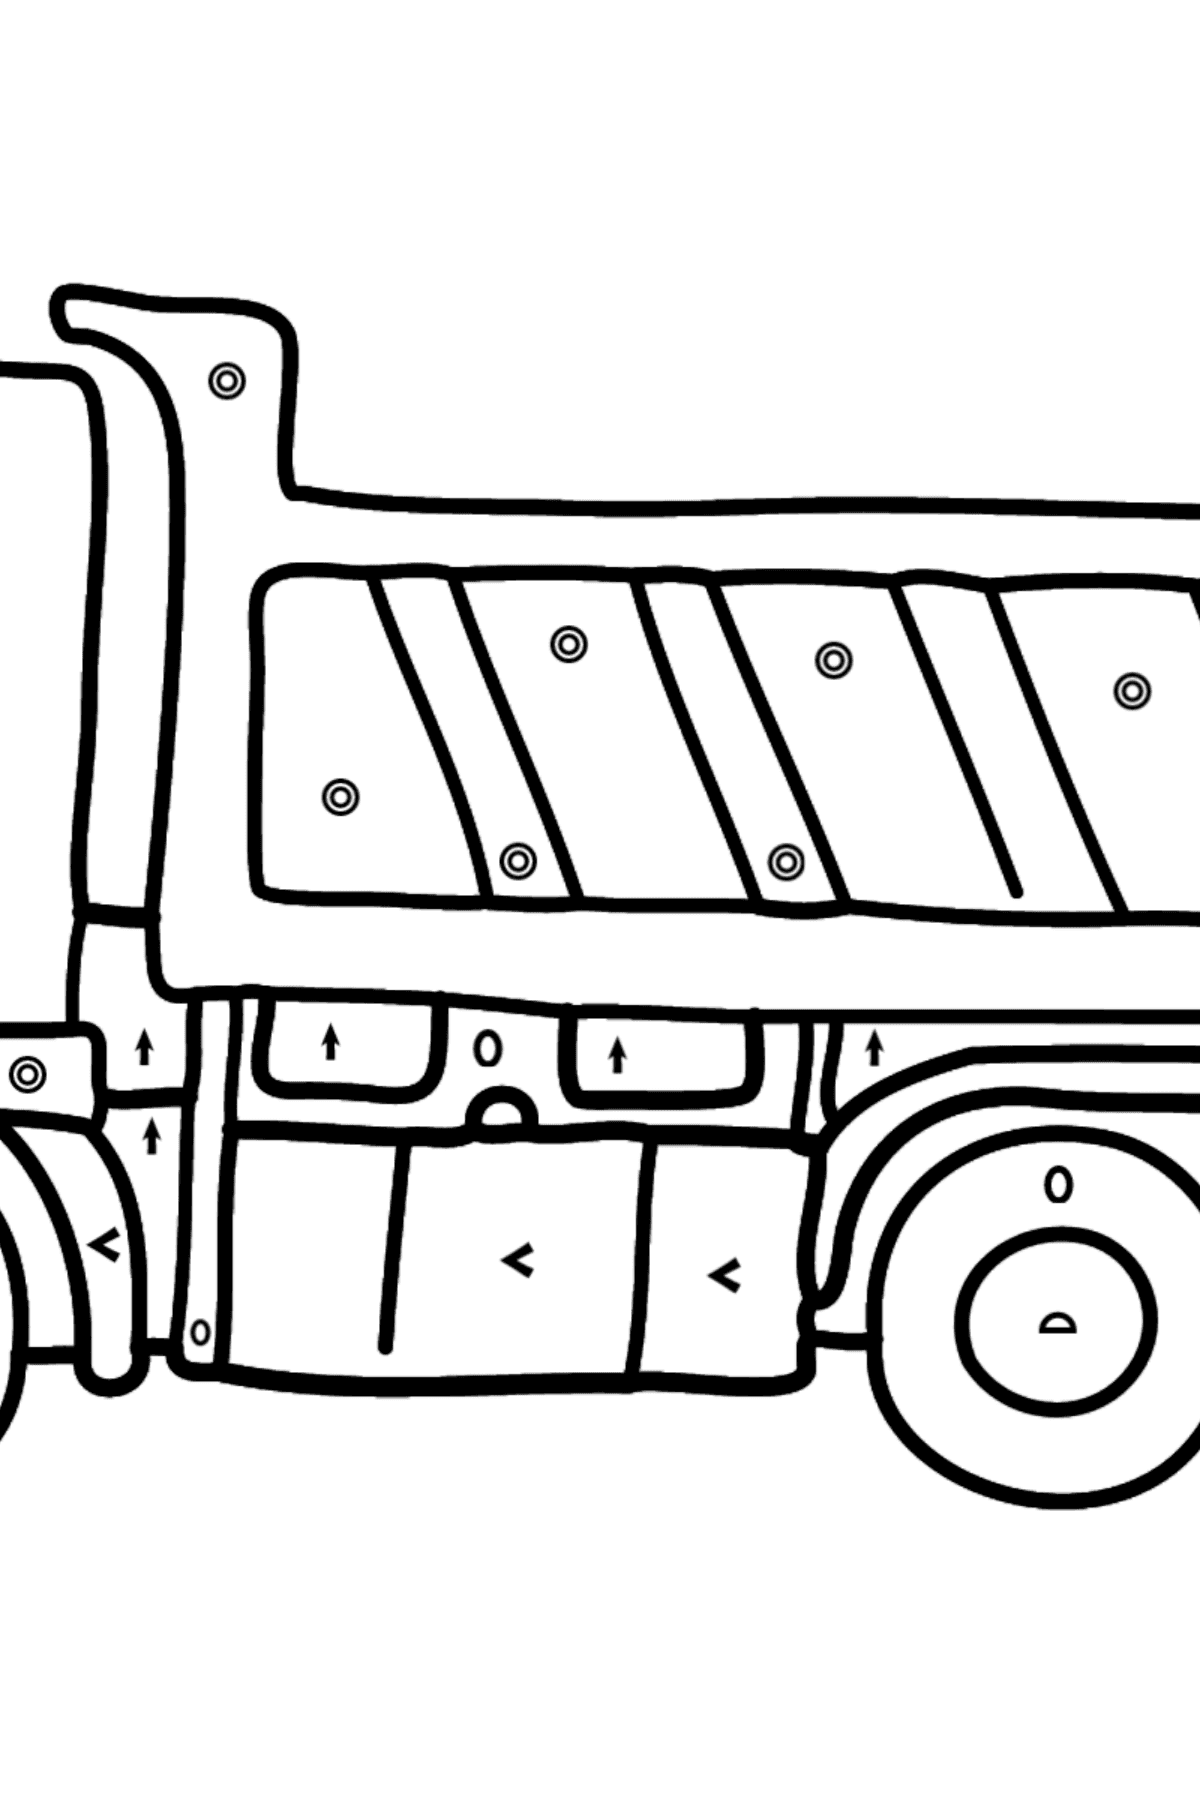 Dibujo para Colorear - Un Camión - Colorear por Símbolos para Niños